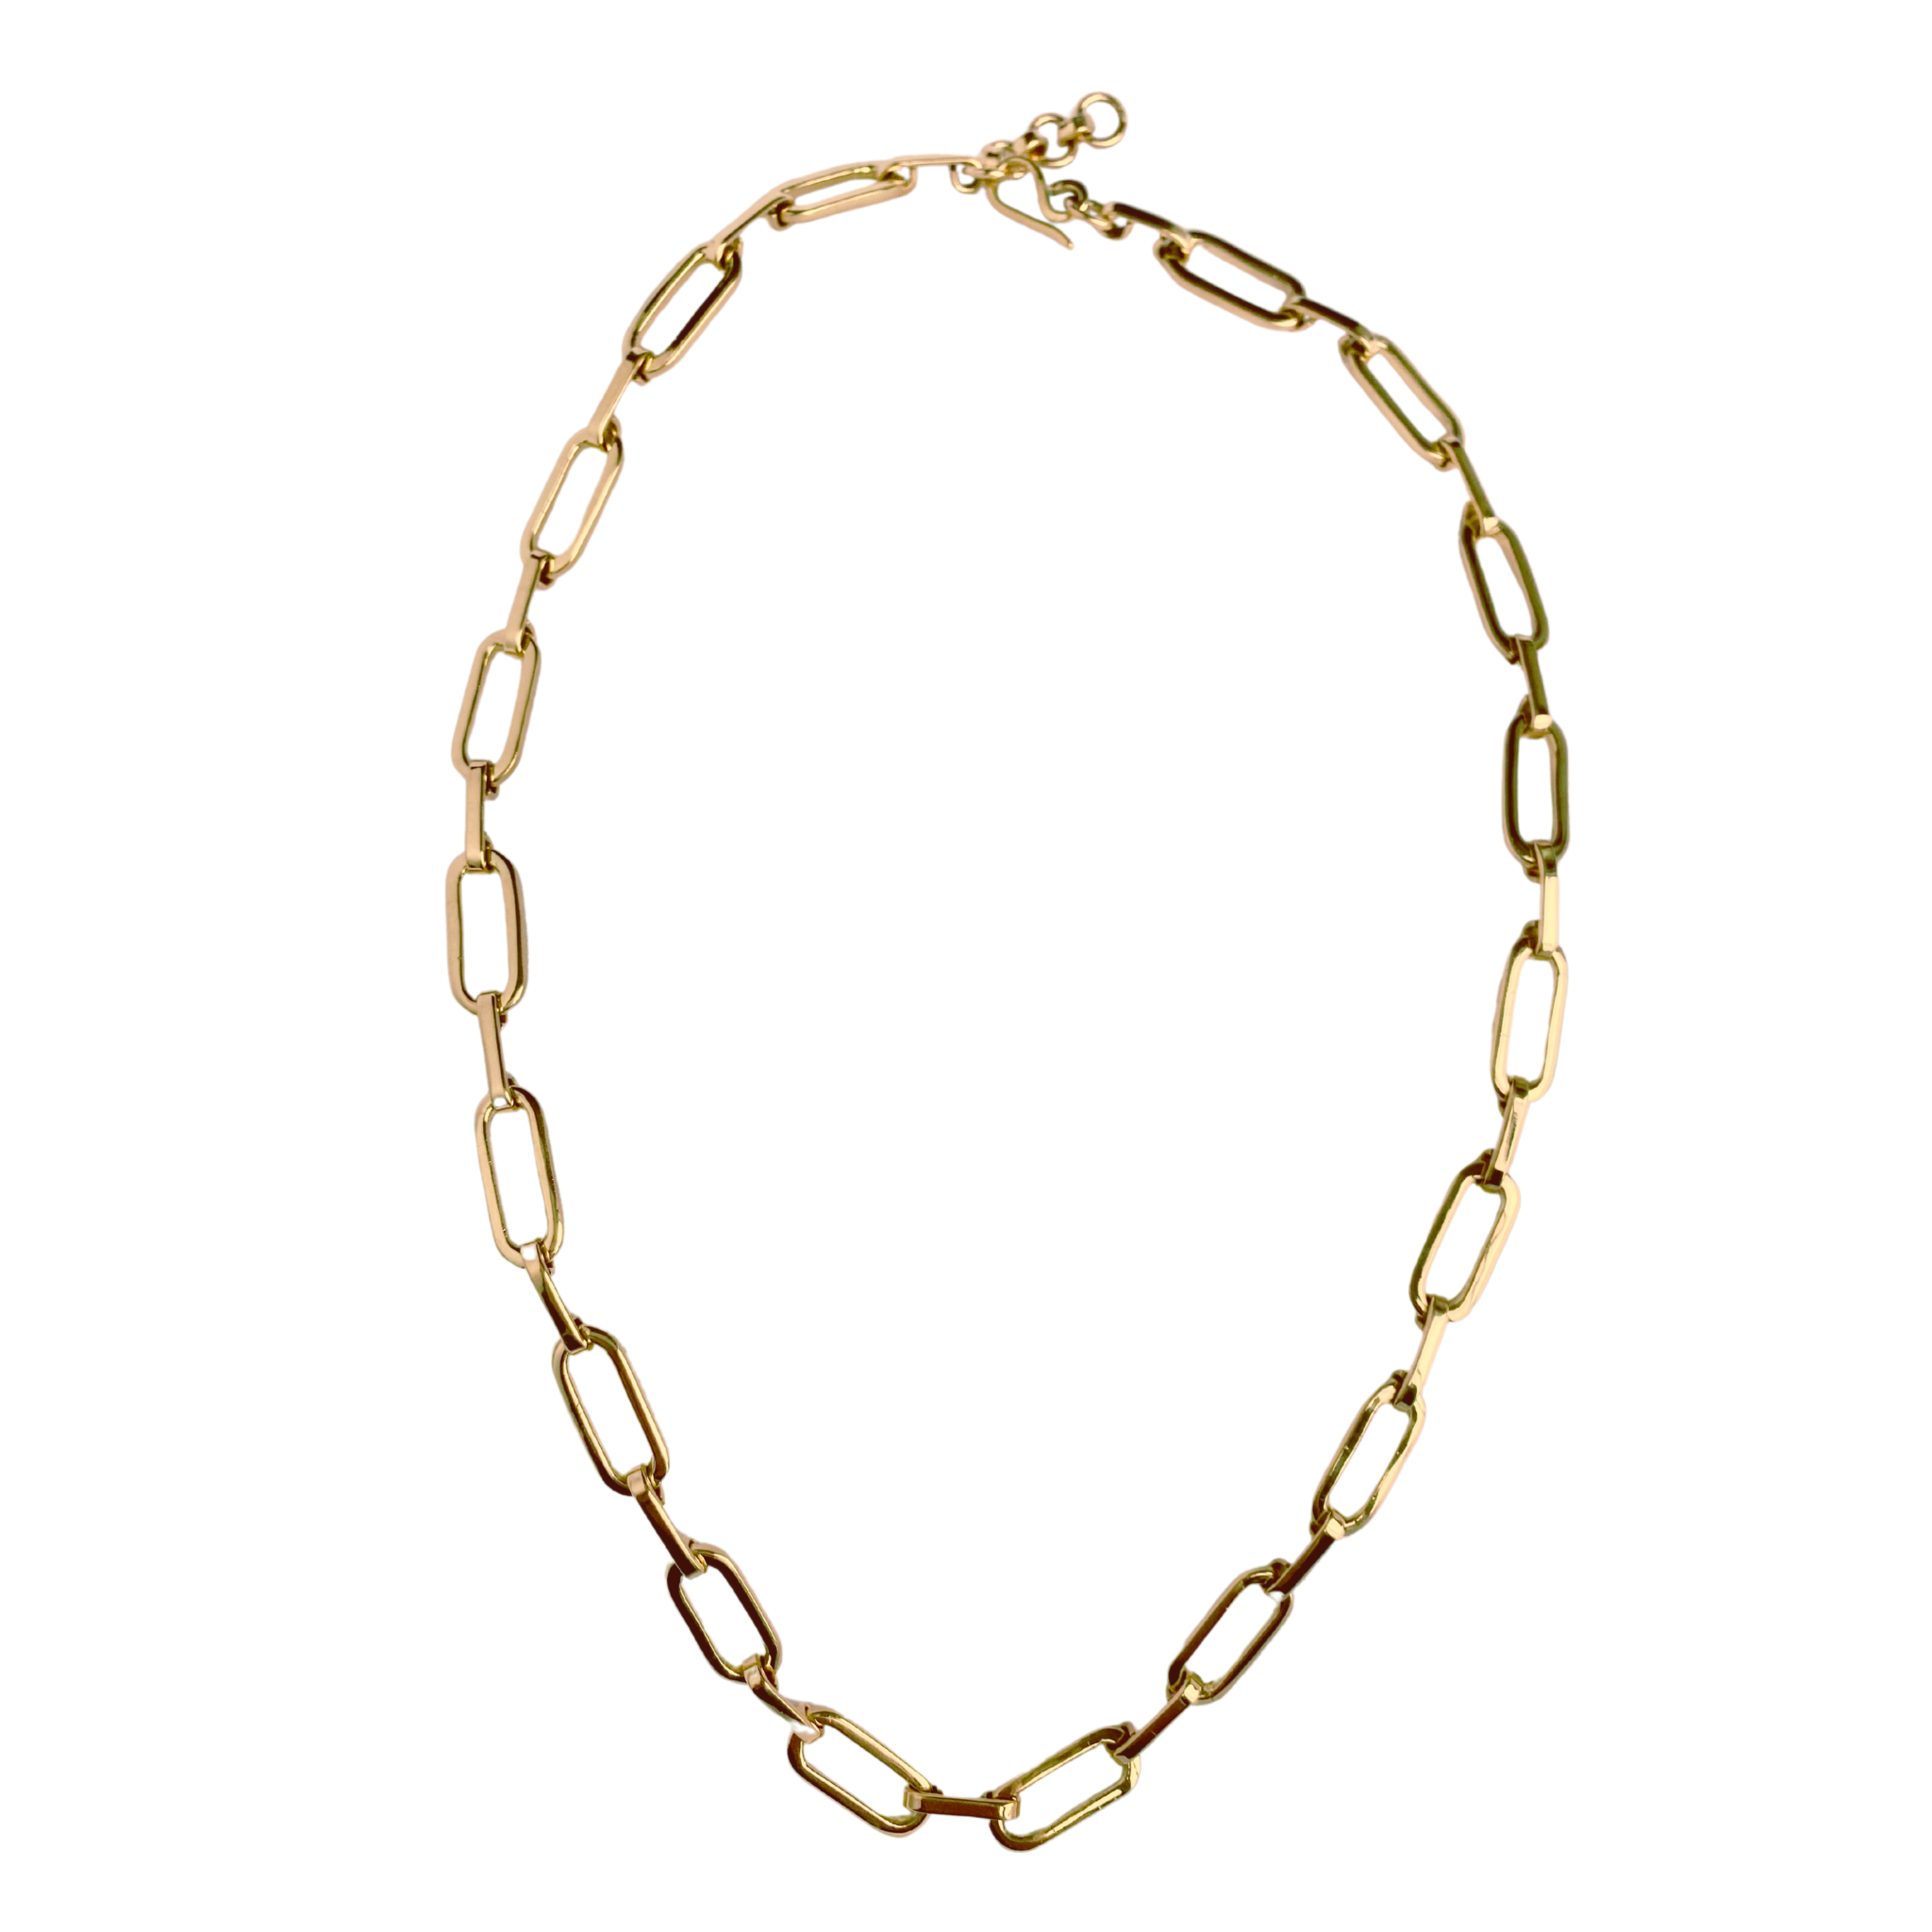 Linked link necklace